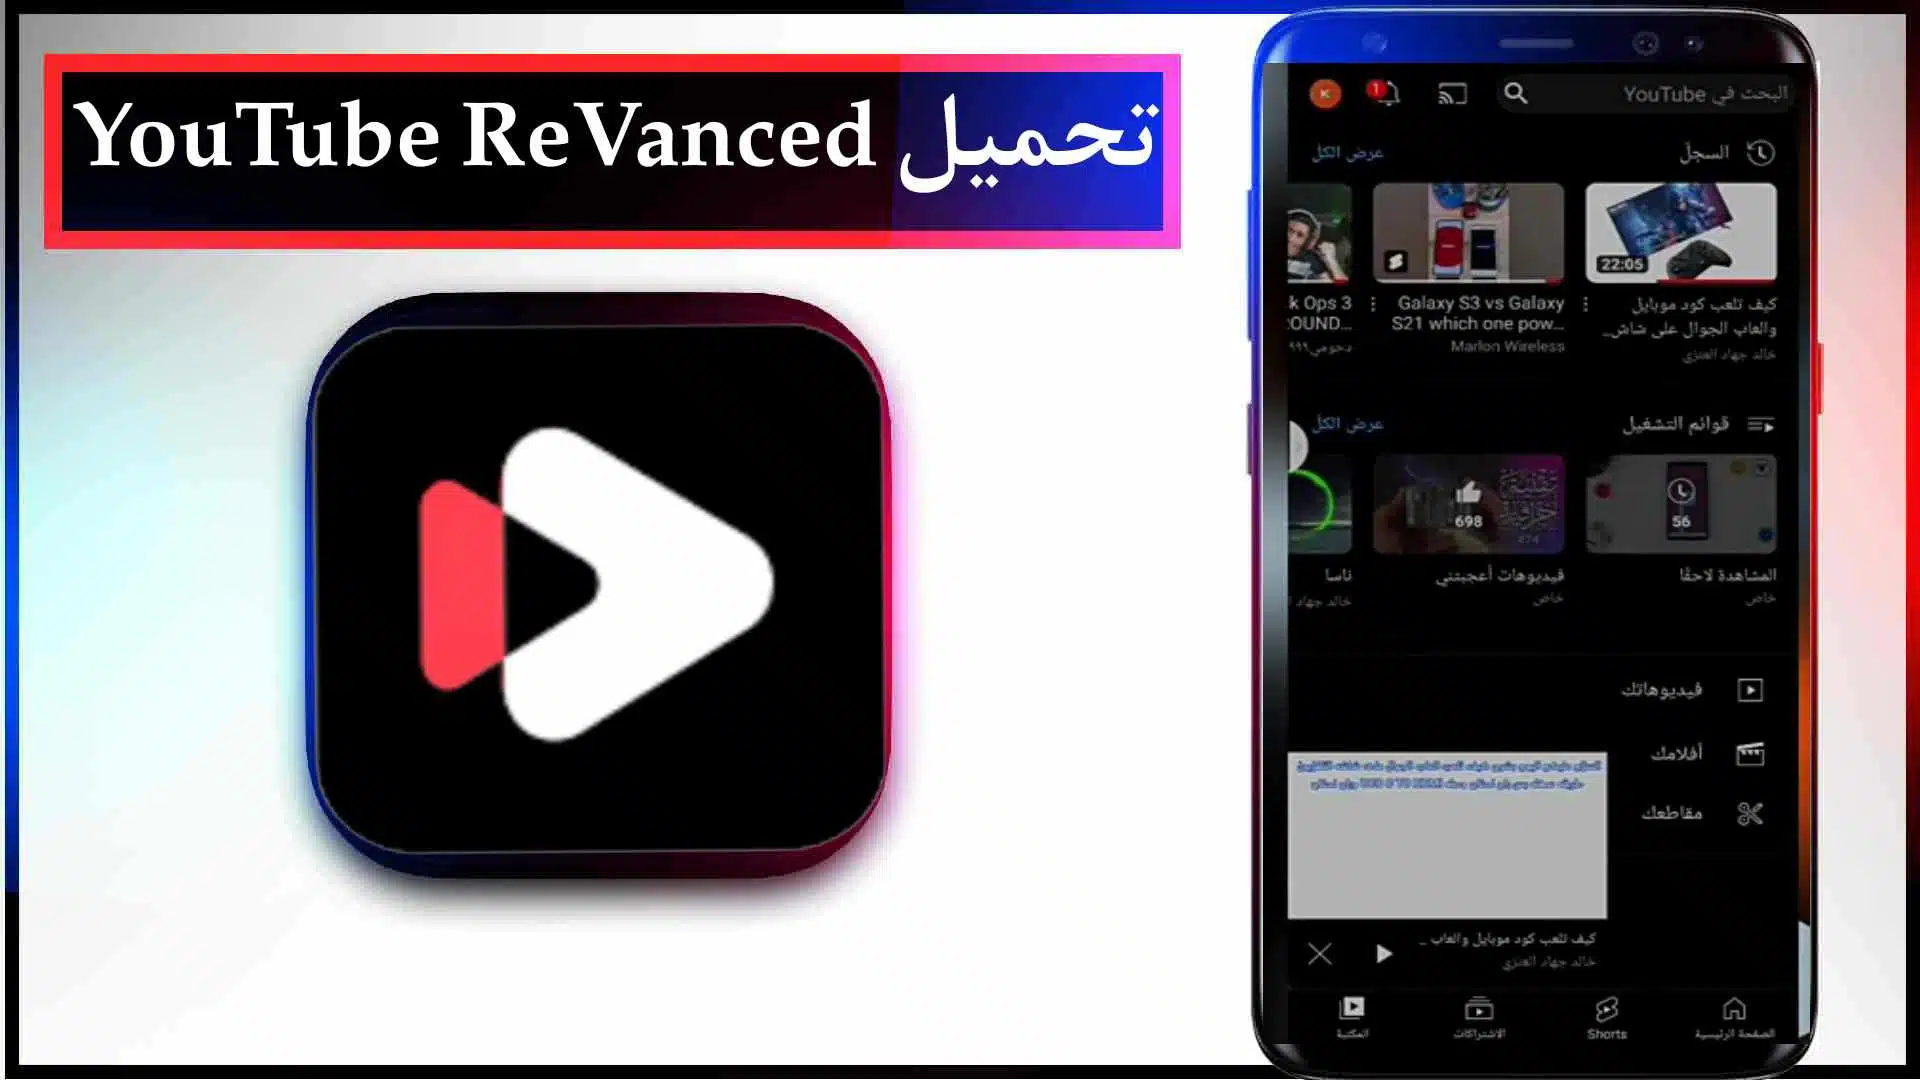 تحميل يوتيوب ريفانسيد YouTube ReVanced Apk مهكر 2023 للاندرويد اخر اصدار مجانا